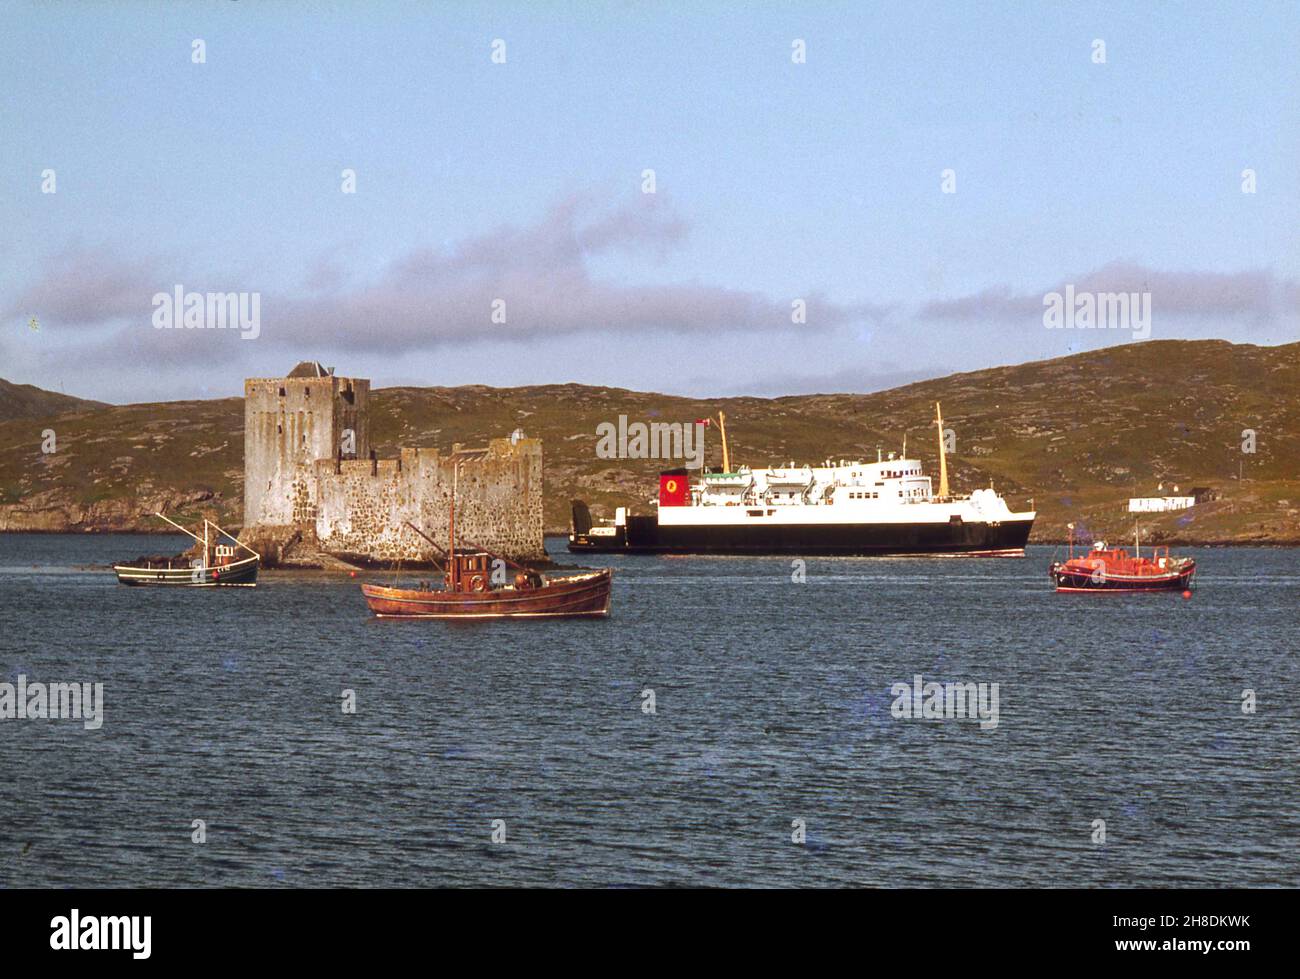 El MV Iona en castlebay con el castillo Kisimul en vista, Isla de Barra 1970s Foto de stock